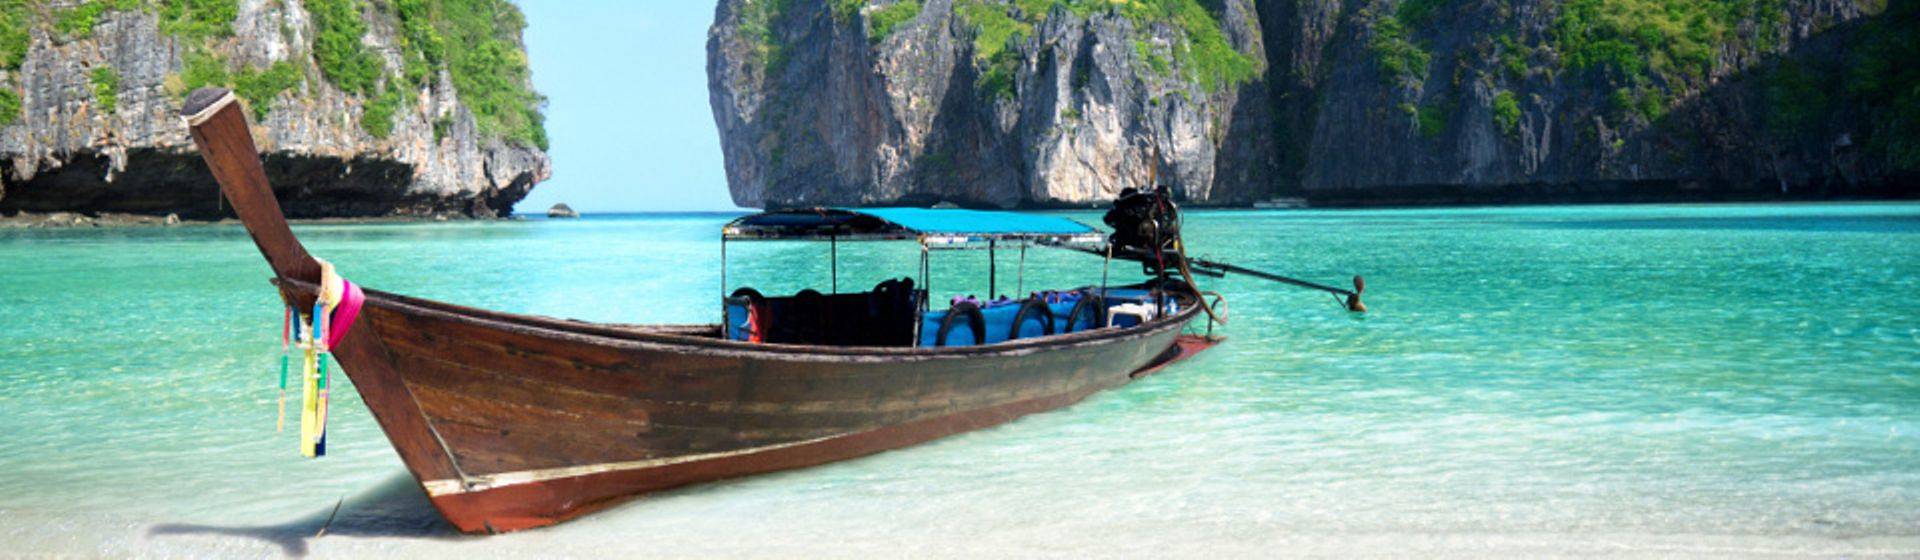 Holidays to Phi Phi Island Image